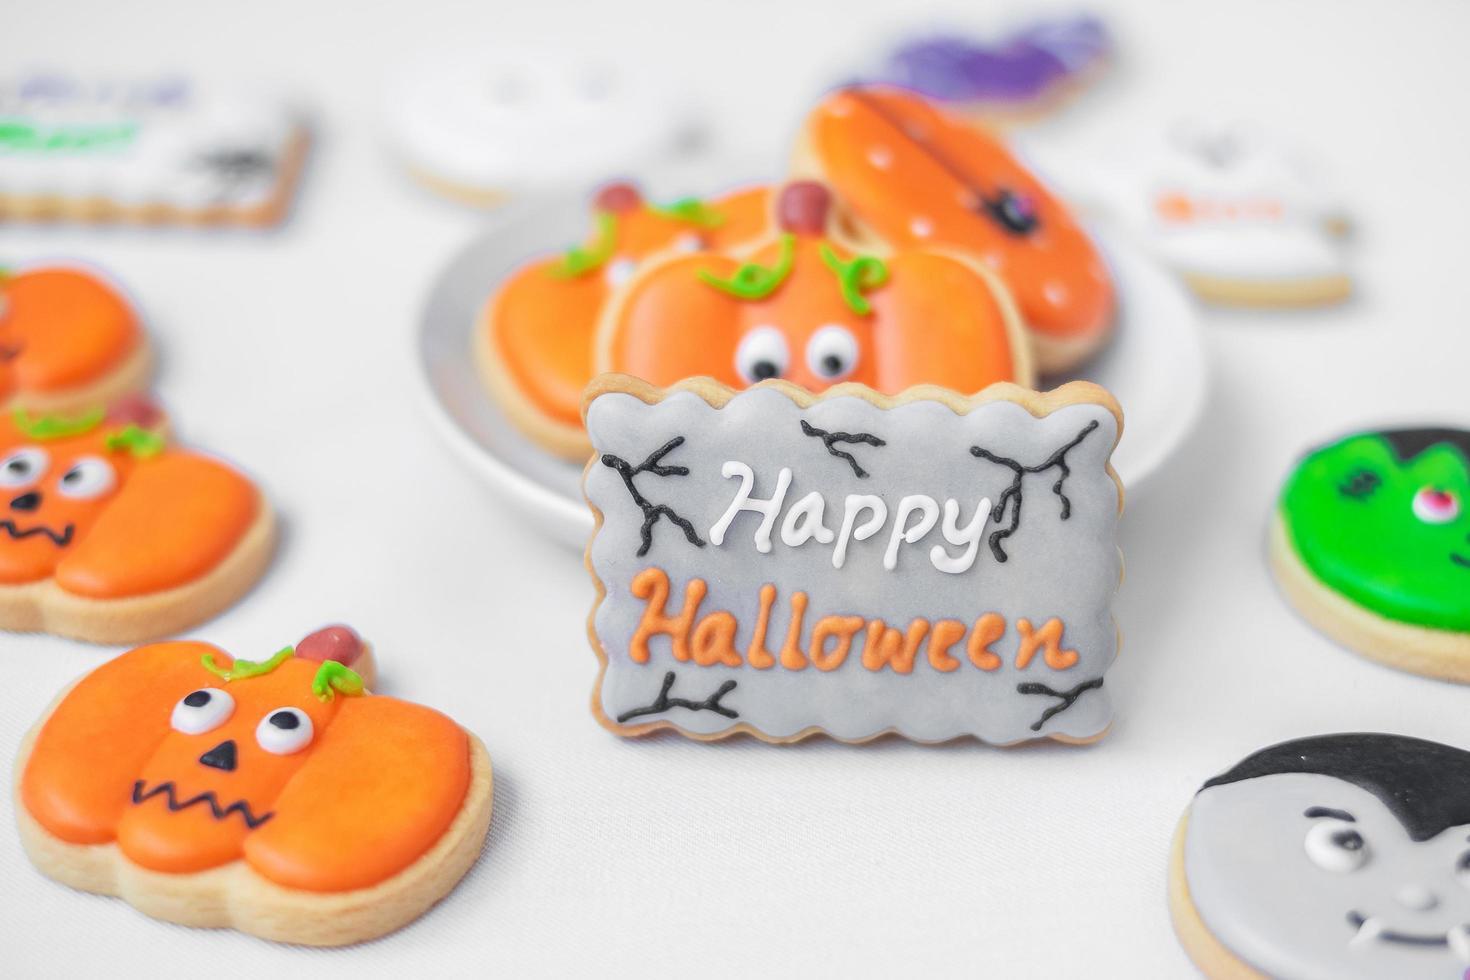 Halloween grappige koekjes set foto